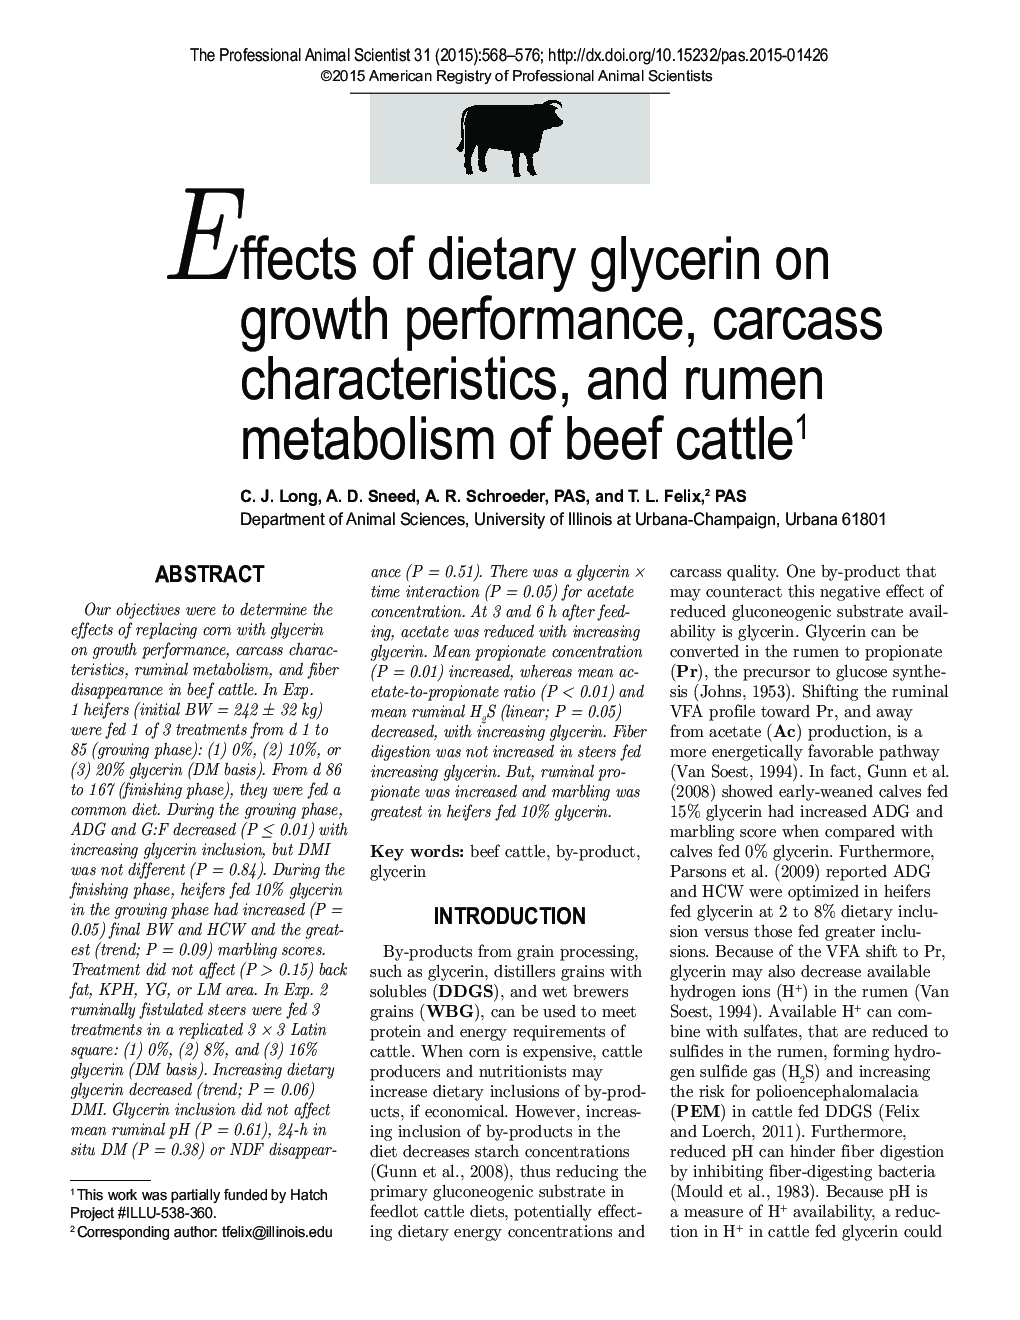 اثر گلیسیرین بر عملکرد، ویژگی های لاشه و متابولیسم شکم گاو گوشتی 1 